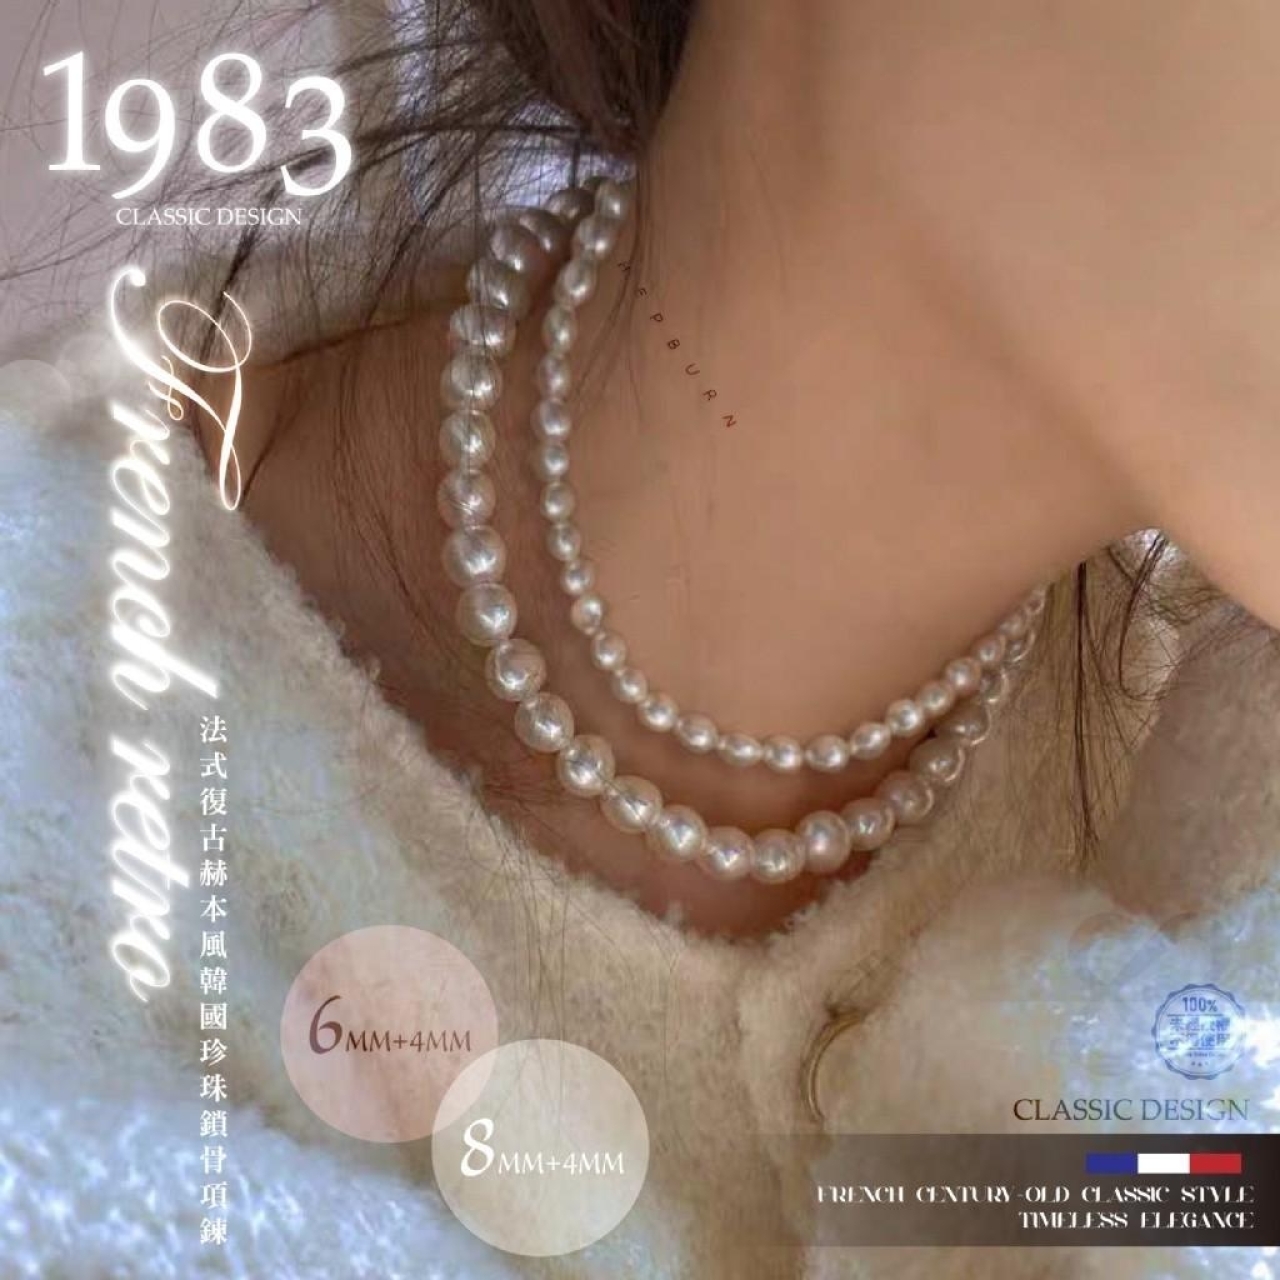 1983法式復古赫本風韓國珍珠鎖骨項鍊二條組